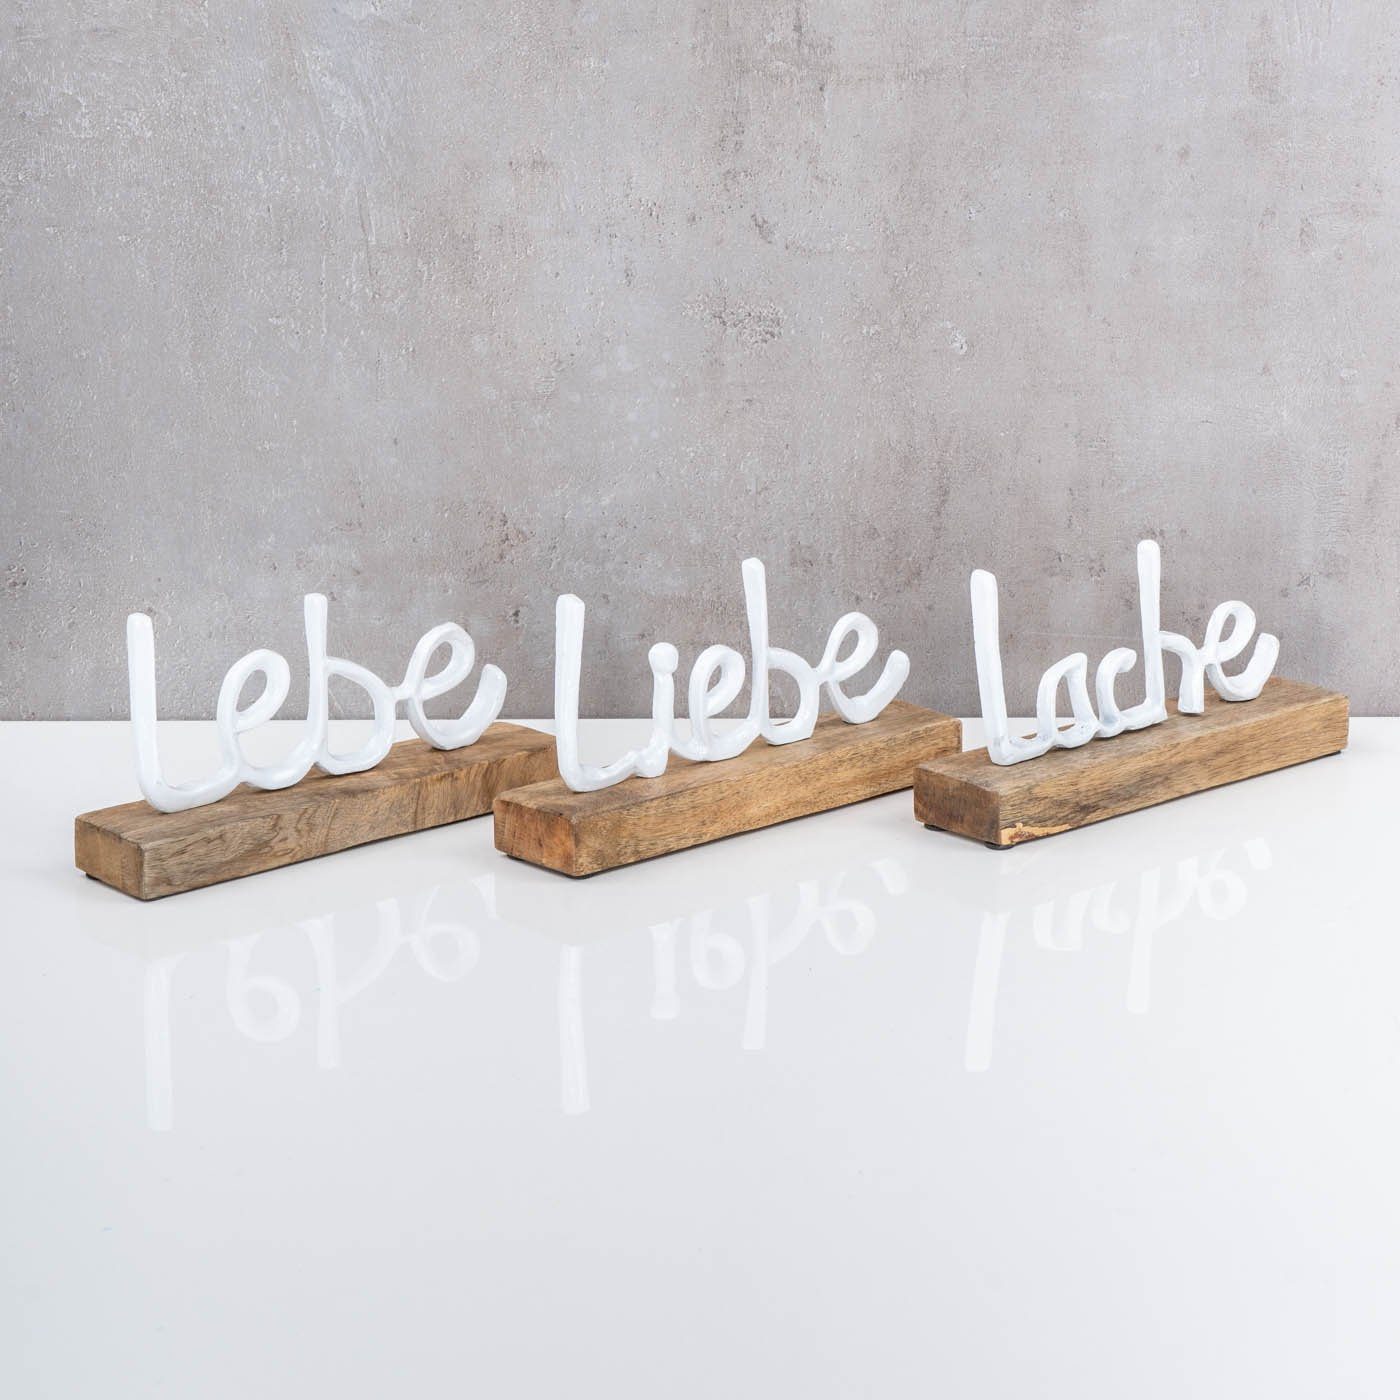 Levandeo® Schriftzug L22cm Metall Lebe 3er Mango Liebe Lache Set Holz Weiß Deko-Schriftzug,